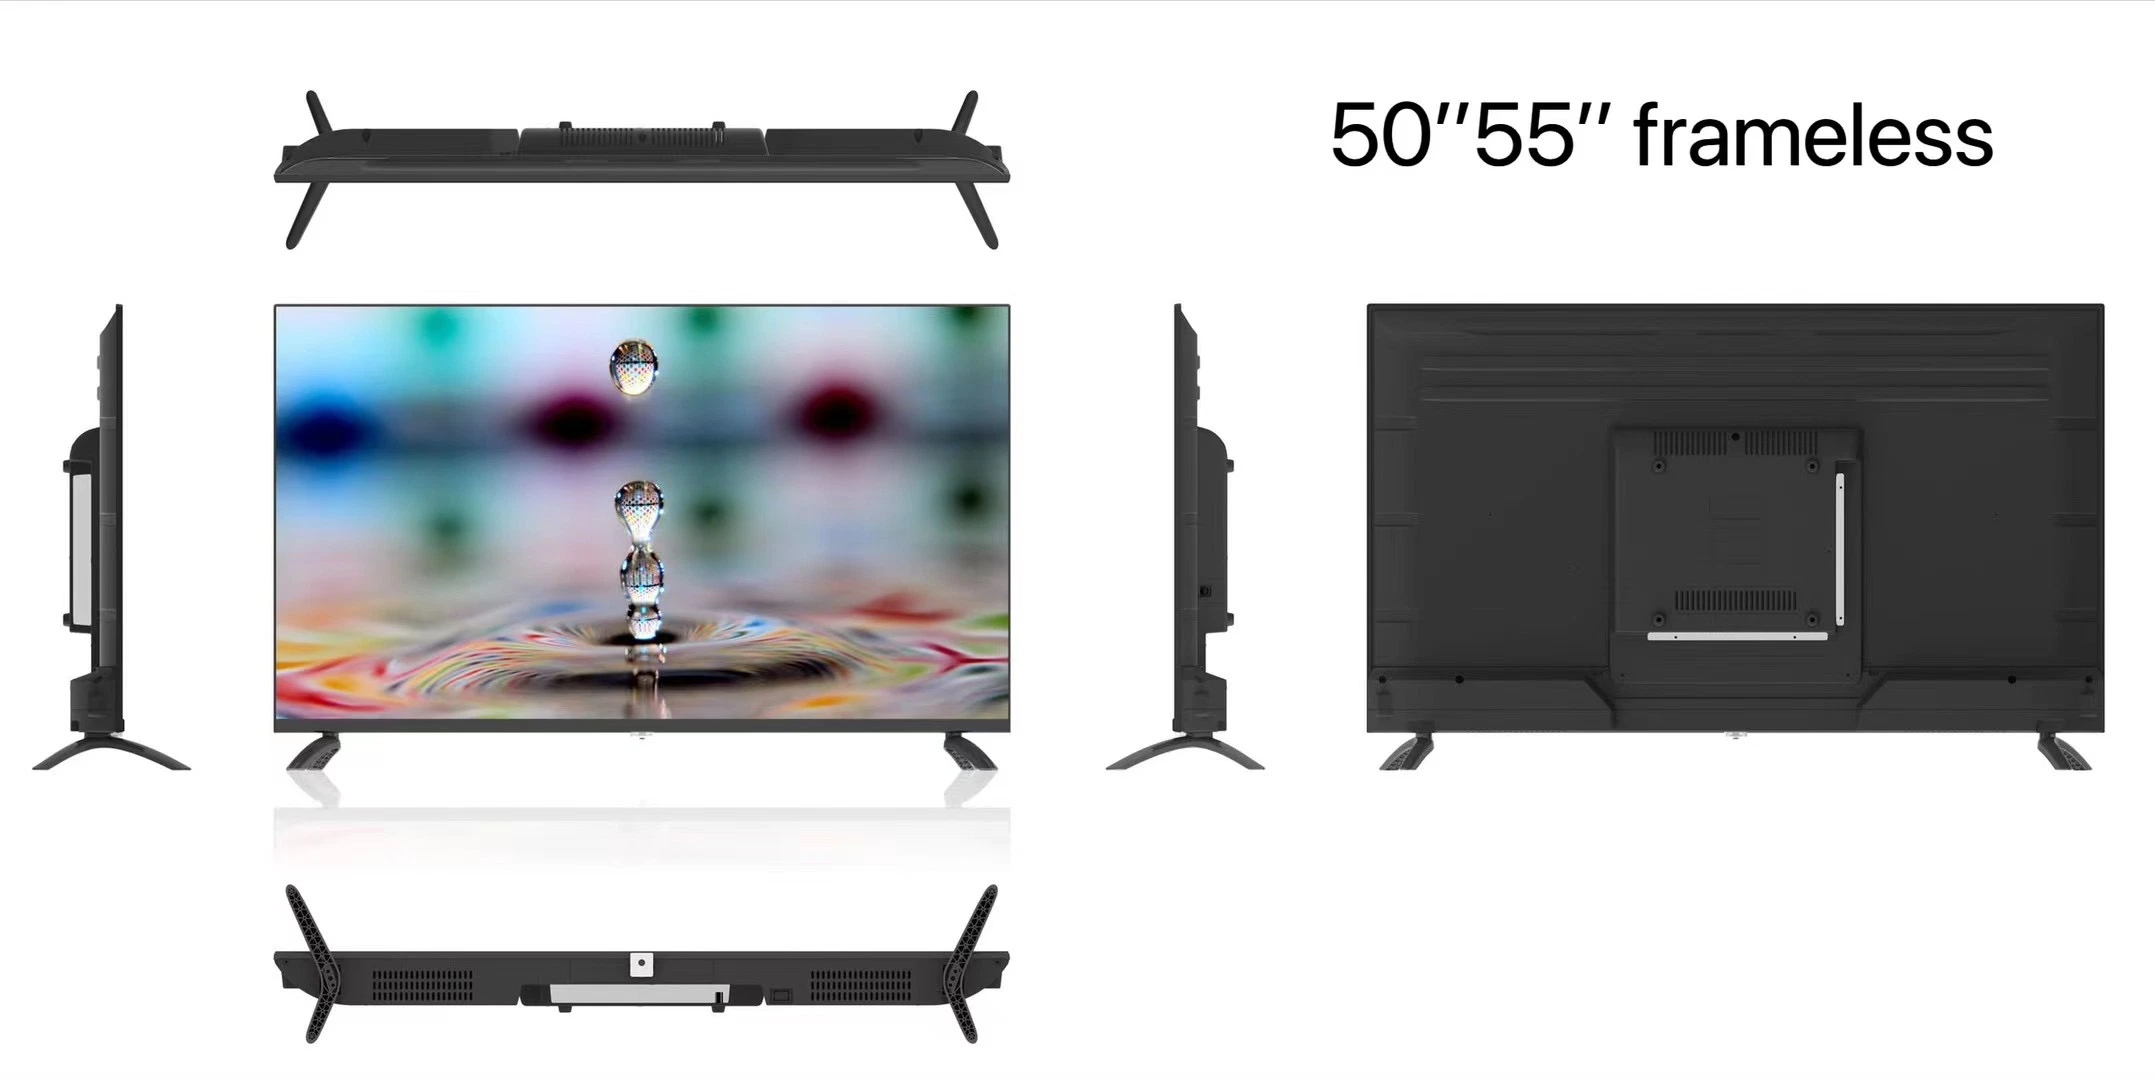 55 Zoll Hot Sale europäischen Markt Bestseller LED-TV TV 4K Frameless Smart TV mit CE RoHS Zertifikat